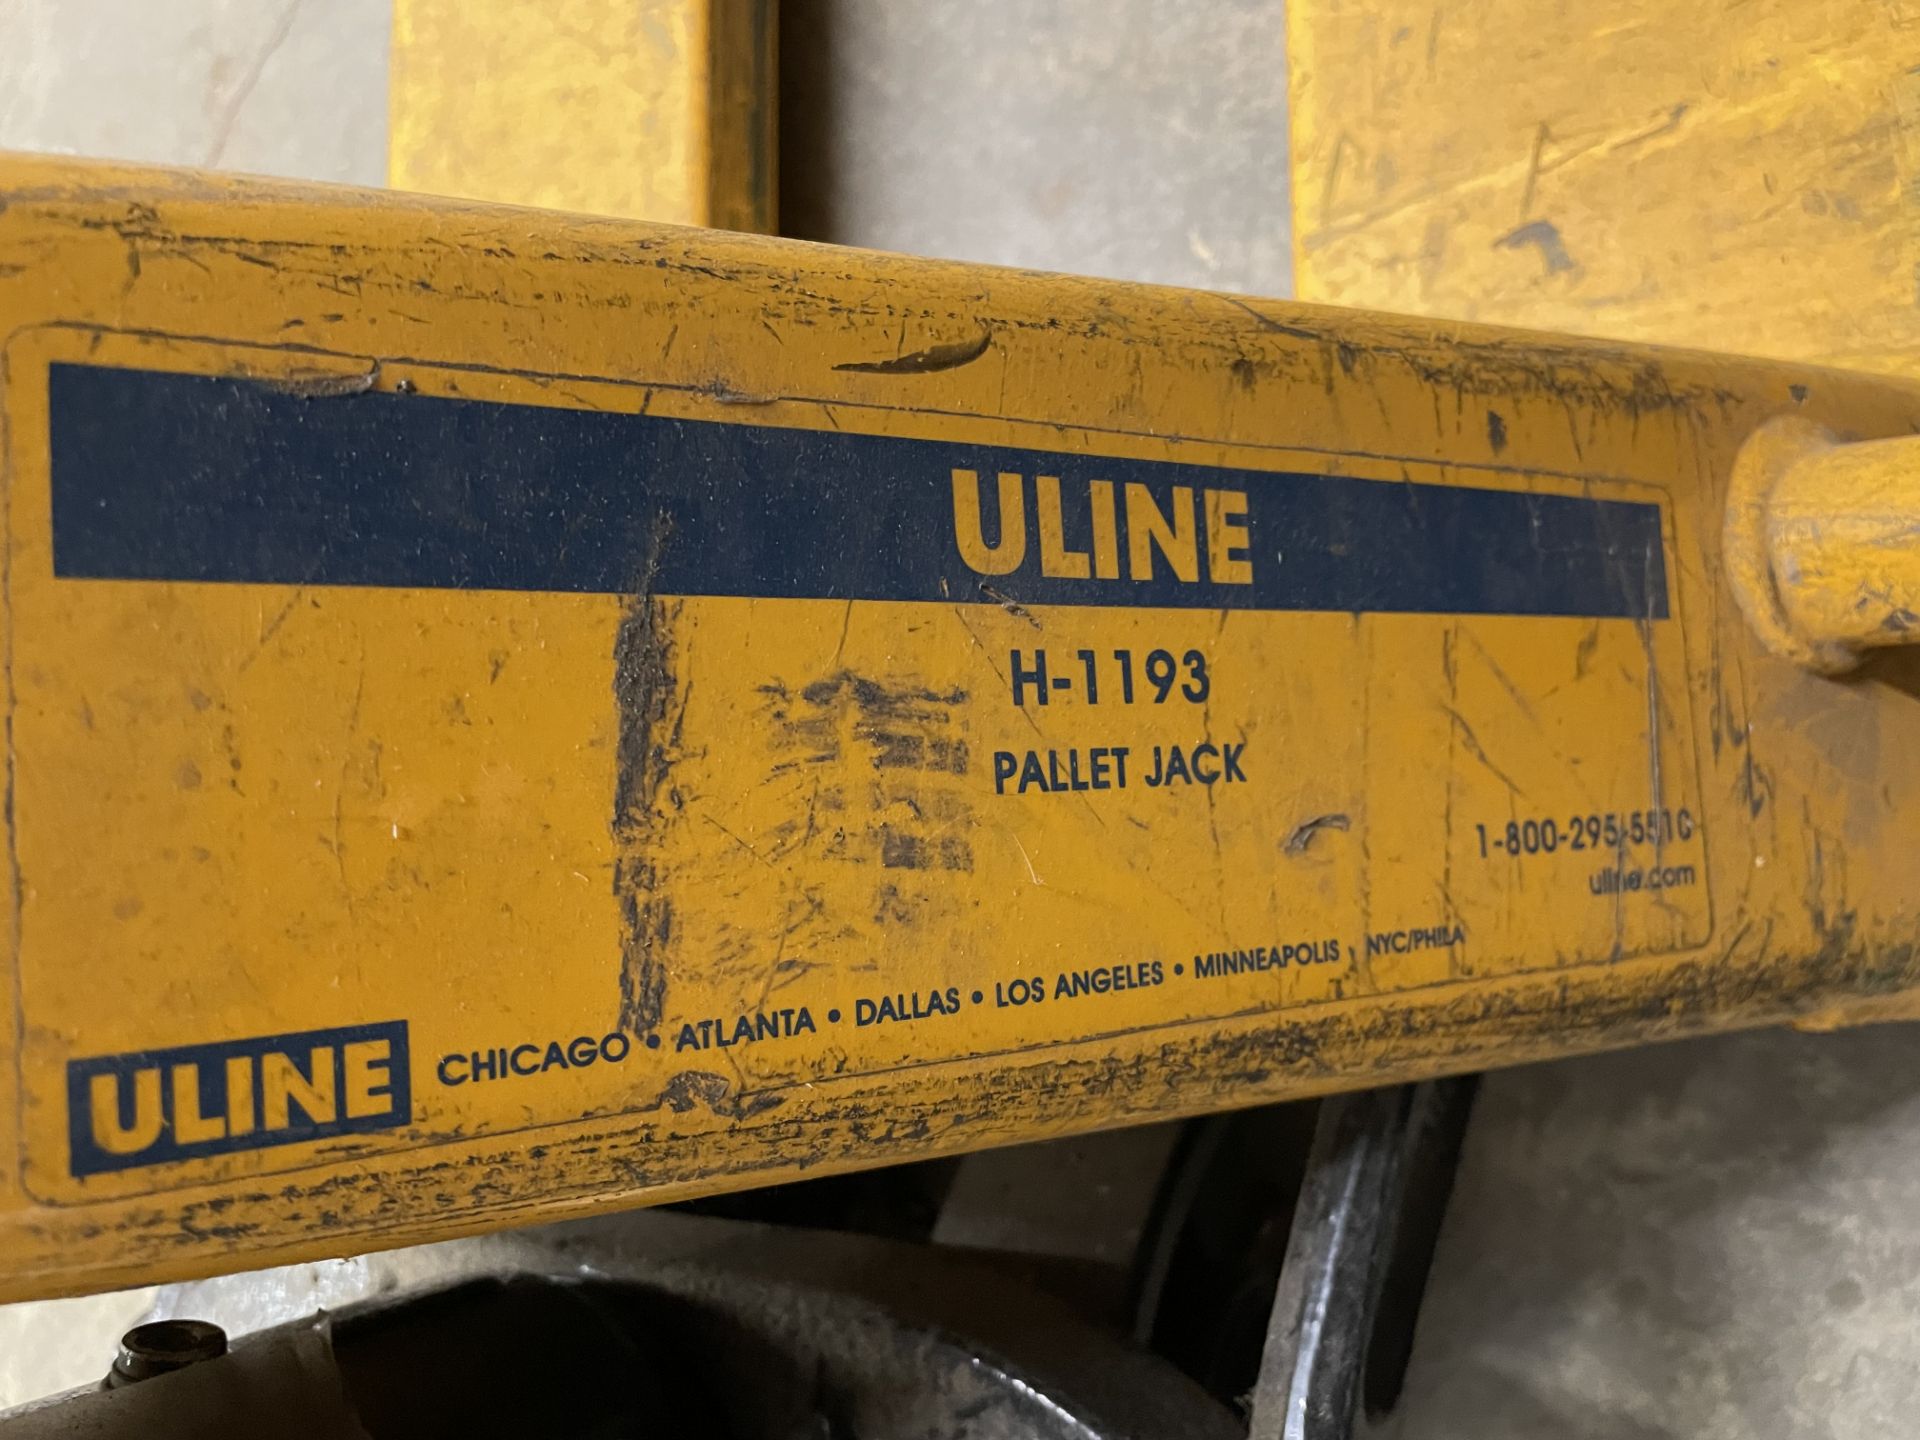 Uline Model H-1193 Narrow Fork Pallet Jack, 5,500 Lb. Capacity - Image 2 of 2